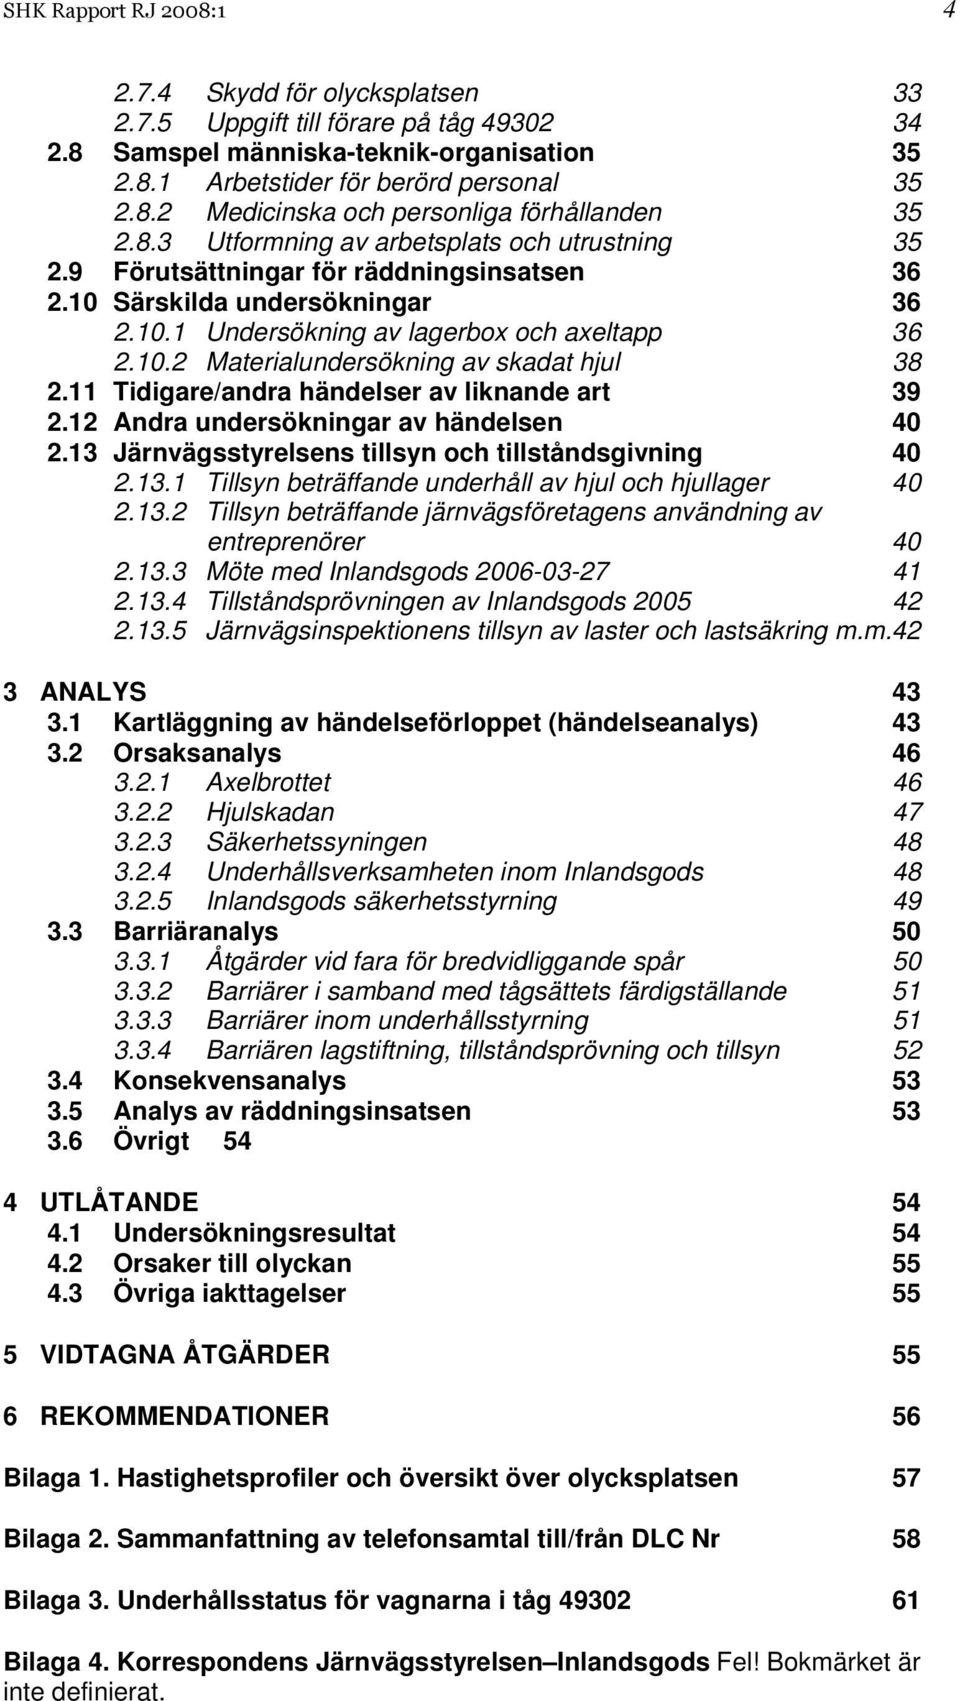 11 Tidigare/andra händelser av liknande art 39 2.12 Andra undersökningar av händelsen 40 2.13 Järnvägsstyrelsens tillsyn och tillståndsgivning 40 2.13.1 Tillsyn beträffande underhåll av hjul och hjullager 40 2.